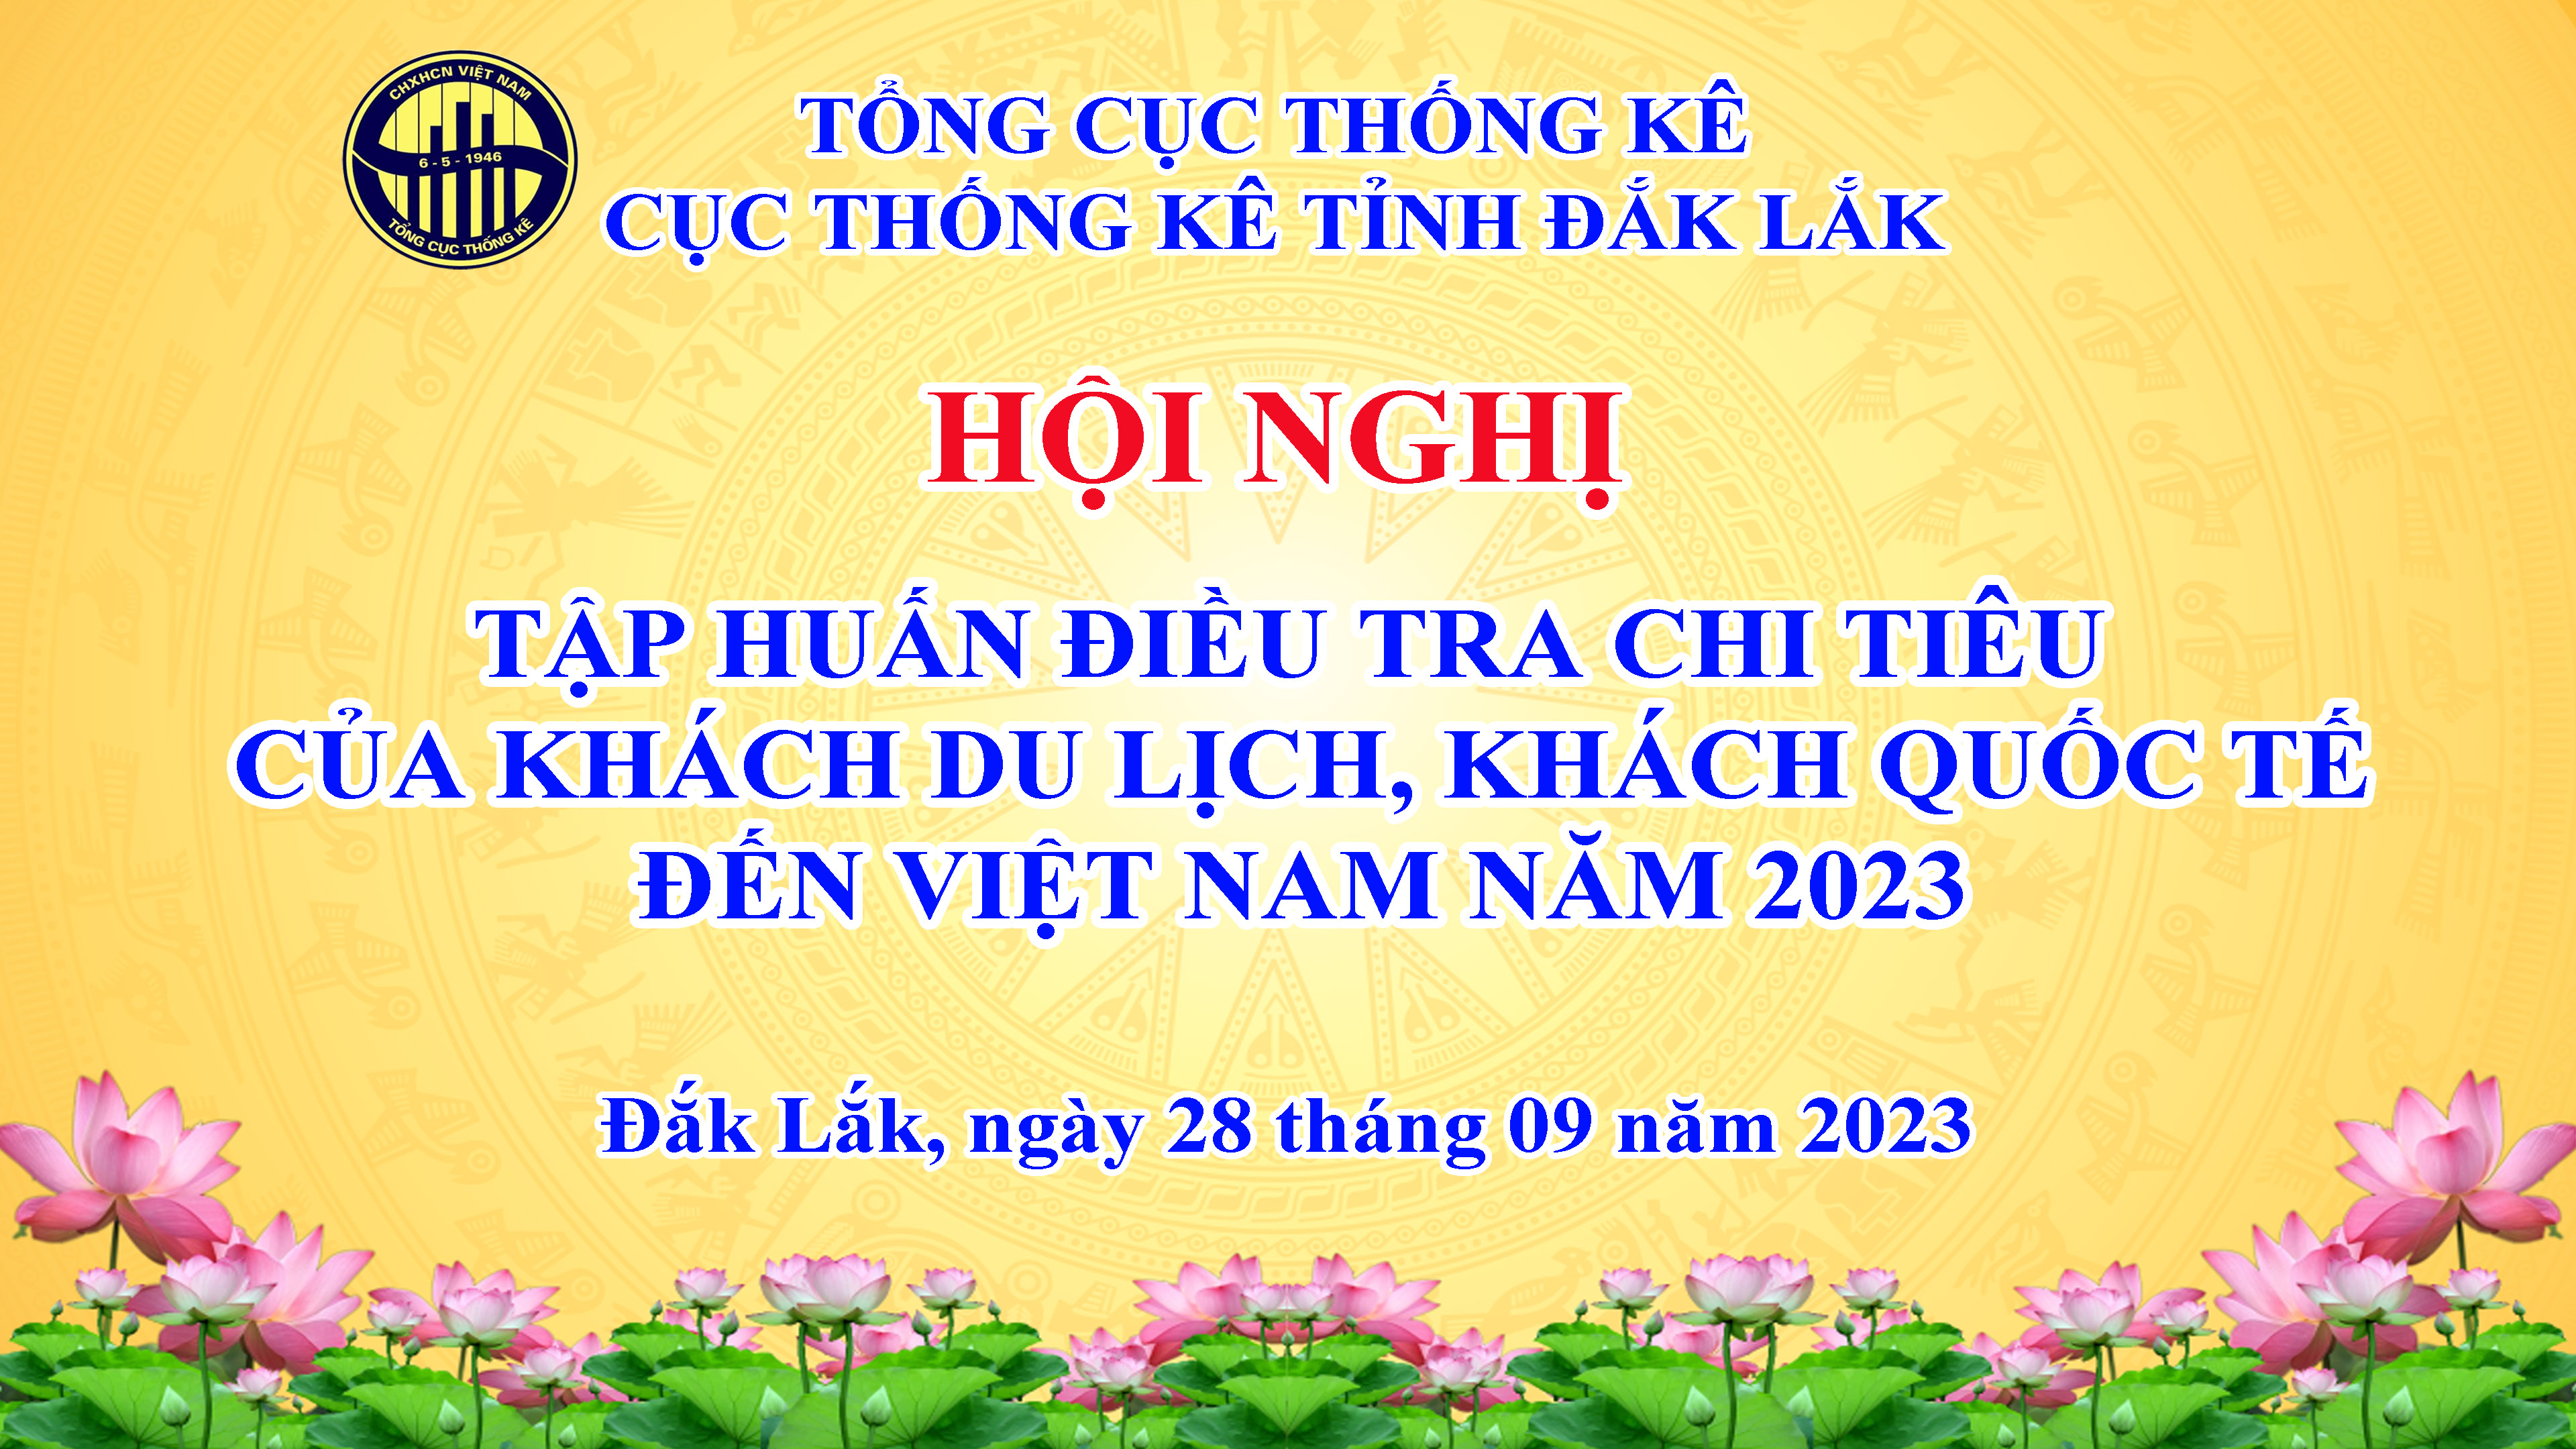 Cục Thống kê tỉnh Đắk Lắk tổ chức hội nghị tập huấn Điều tra chi tiêu của khách du lịch, khách quốc tế đến Việt Nam năm 2023